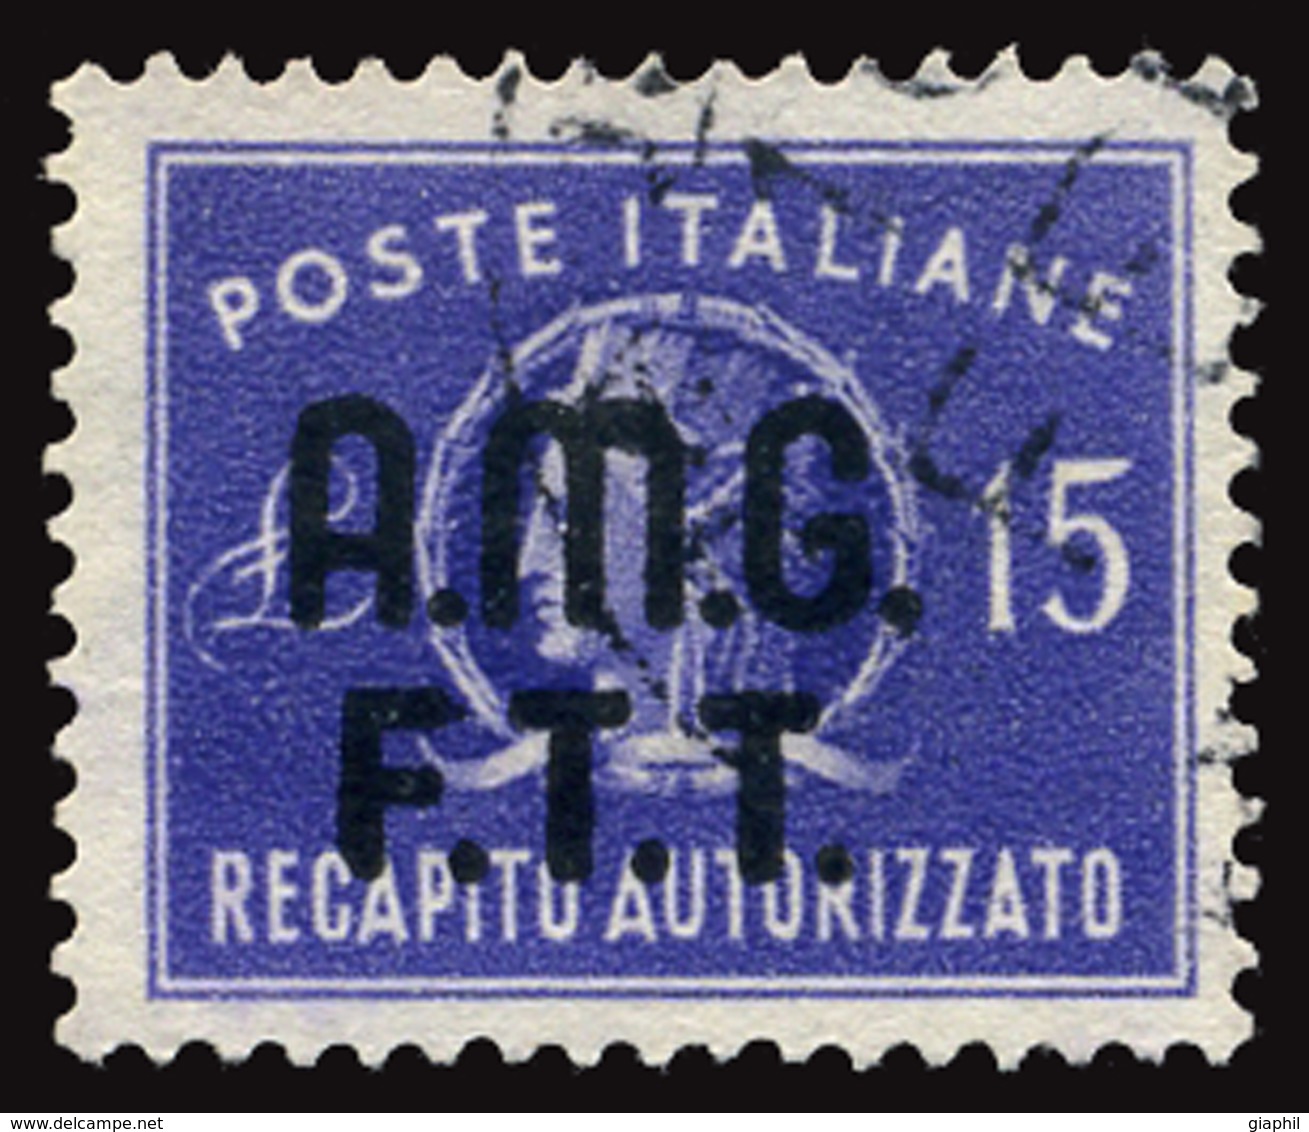 ITALY ITALIA TRIESTE A 1949 RECAPITO AUTORIZZATO 15 L. (Sass. 3) USATO OFFERTA! - Afgestempeld